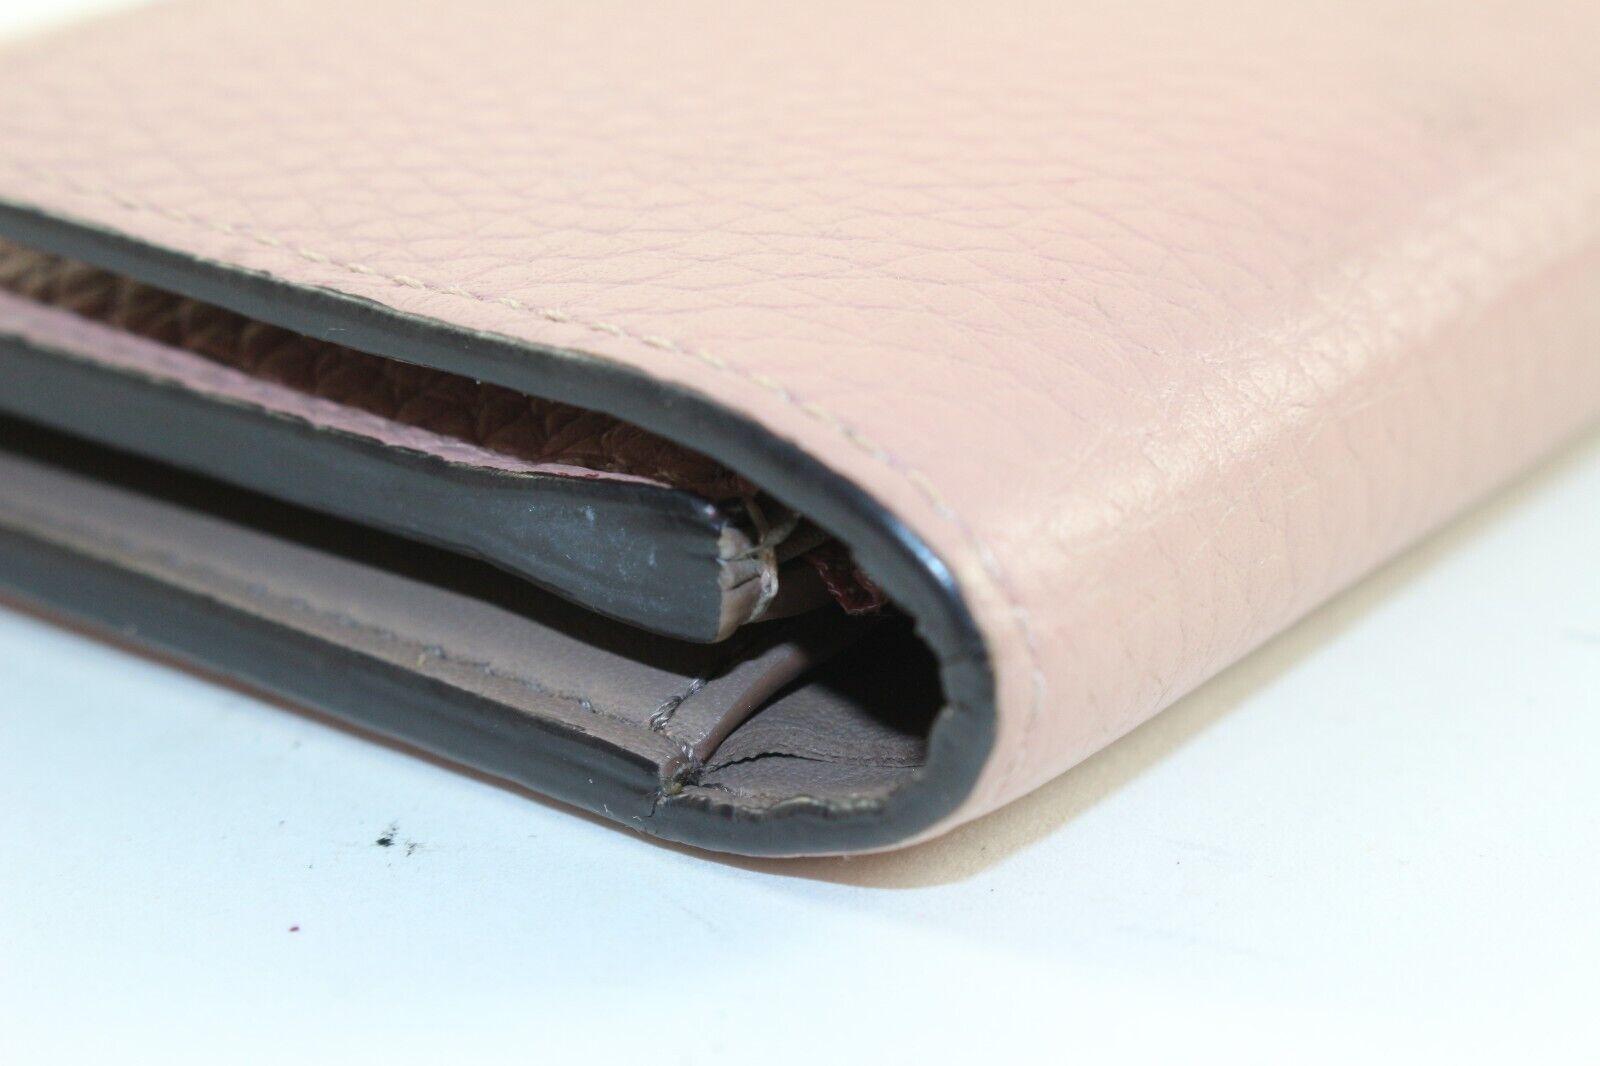 LOUIS VUITTON Blush Pink Taurillong Leder Capucines Brieftasche 1LV1219K
Datum Code/Seriennummer: M10198

Hergestellt in: Frankreich

Maße: Länge:  5,5